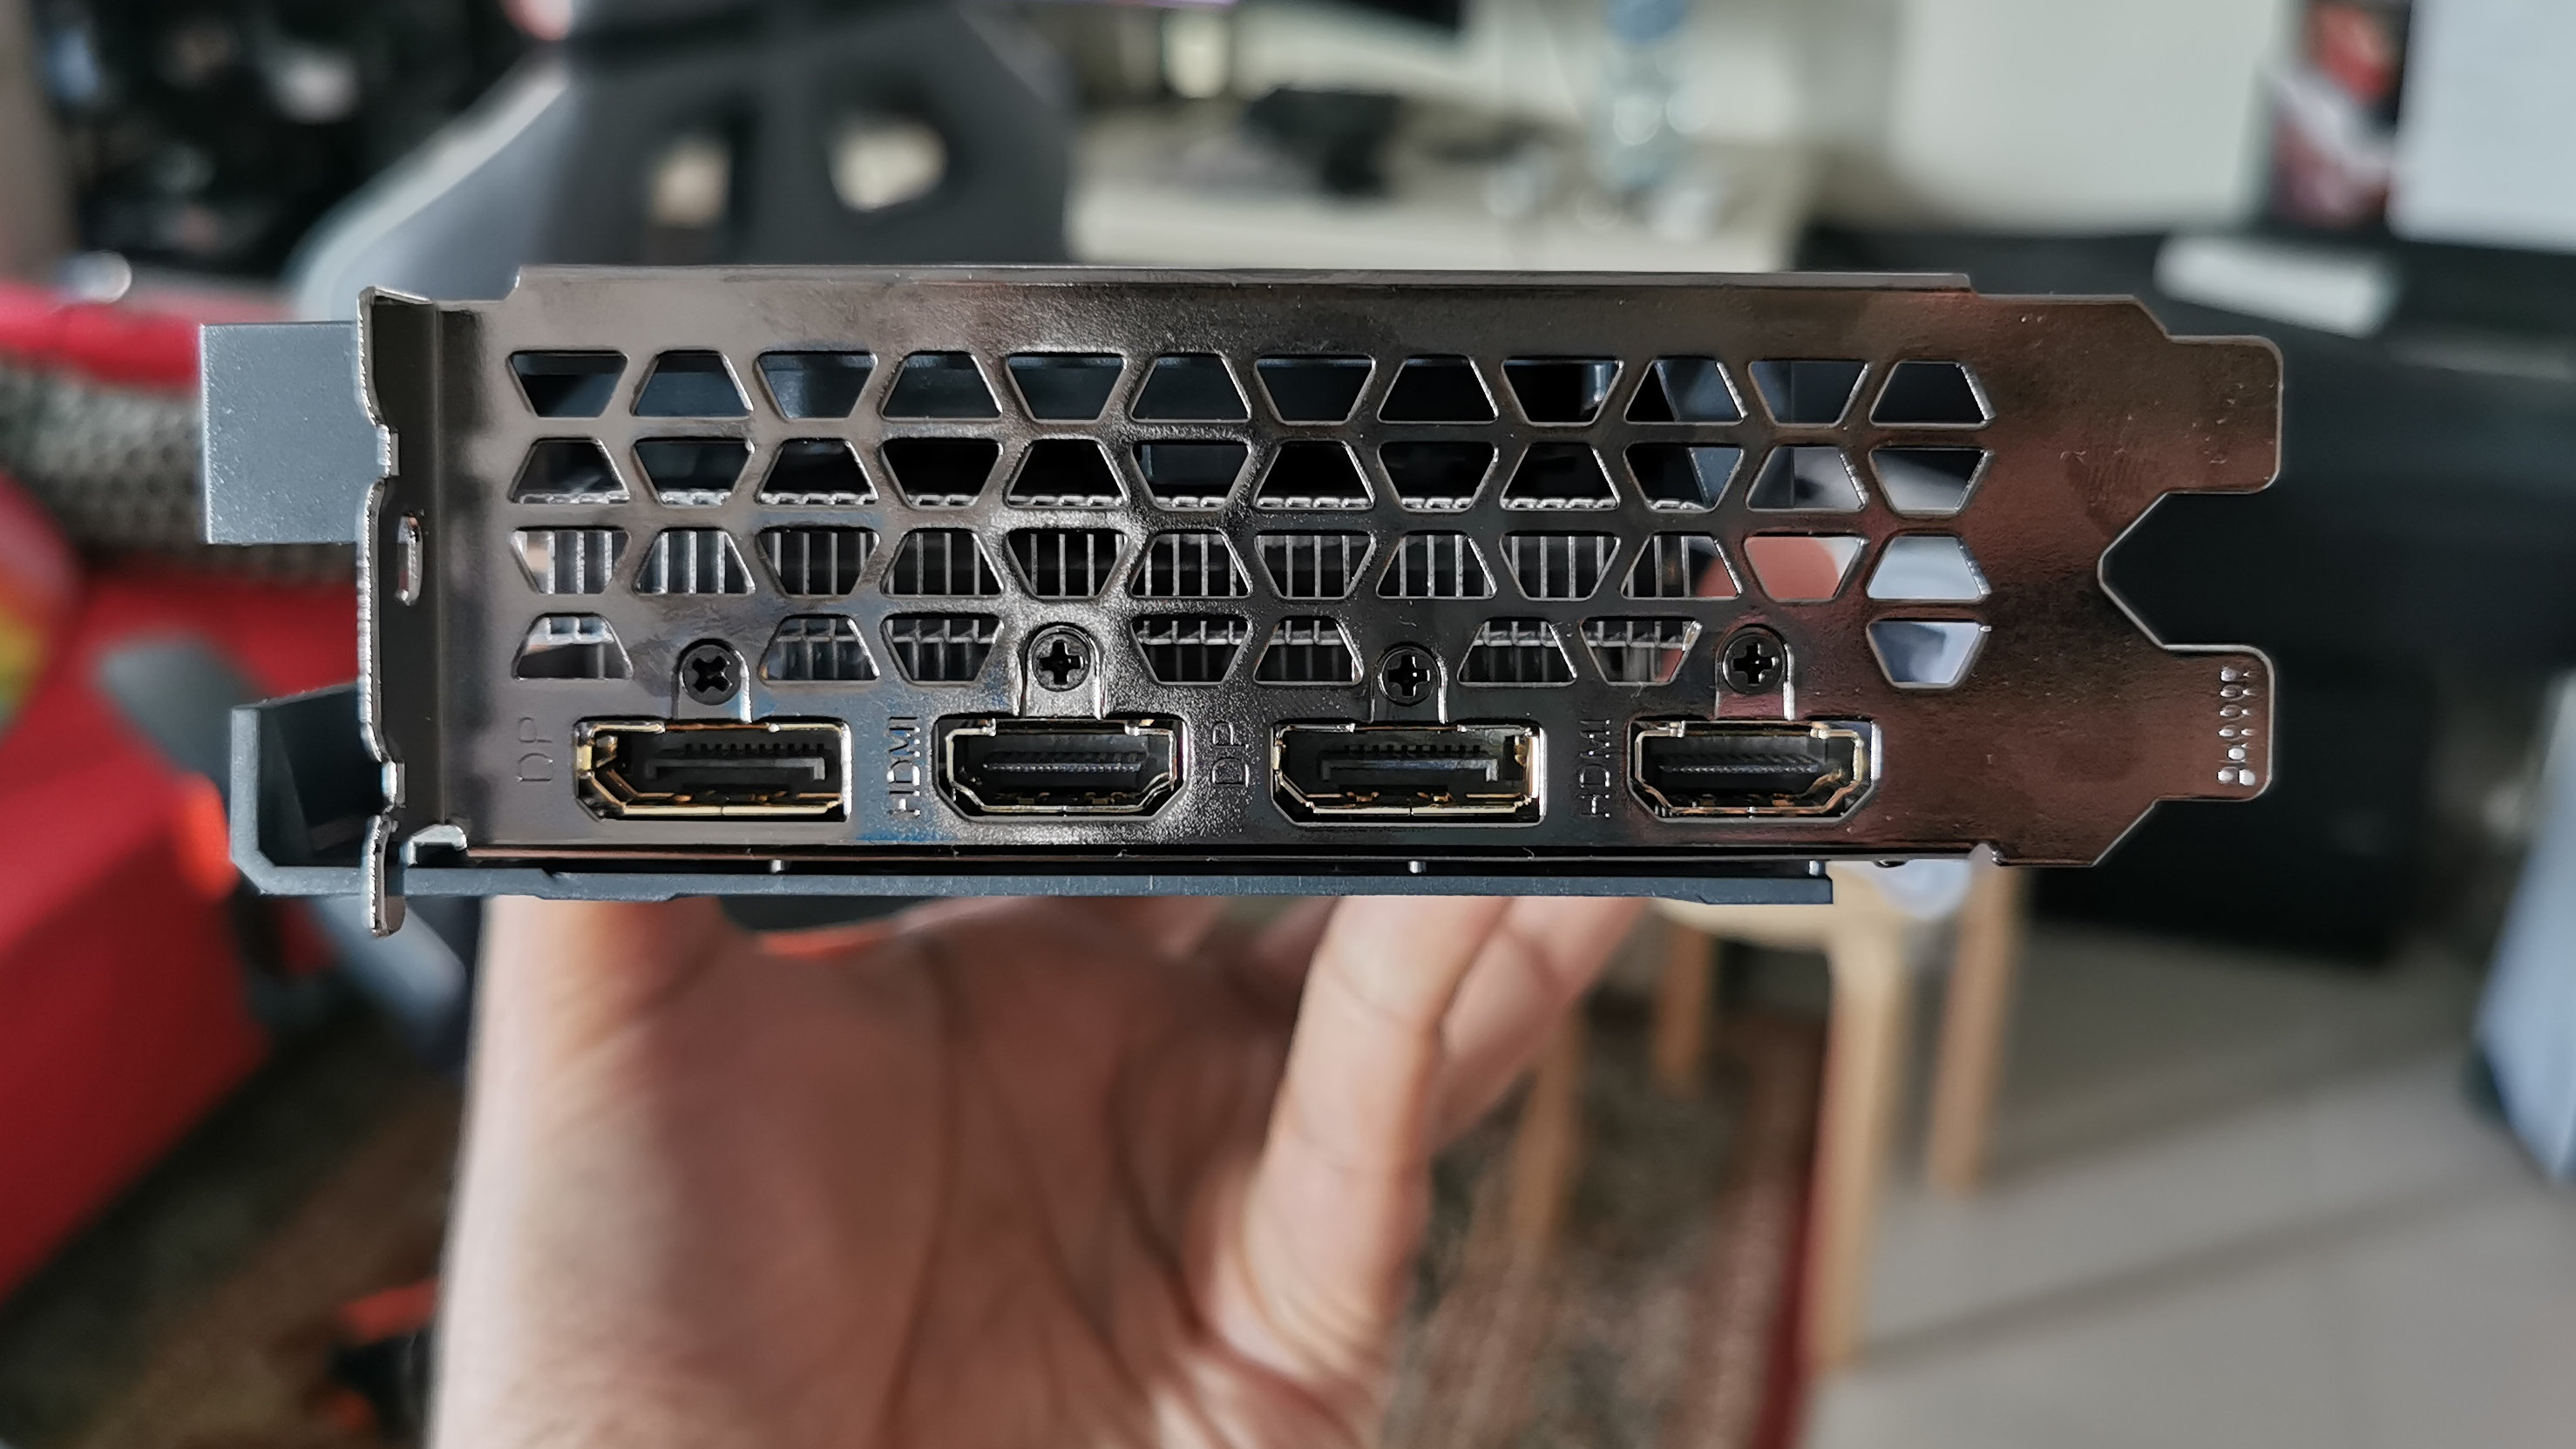 Nvidia RTX 3050 6 ГБ замечена в магазине – но характеристики не успокаивают наших опасений, что это может быть провал графического процессора